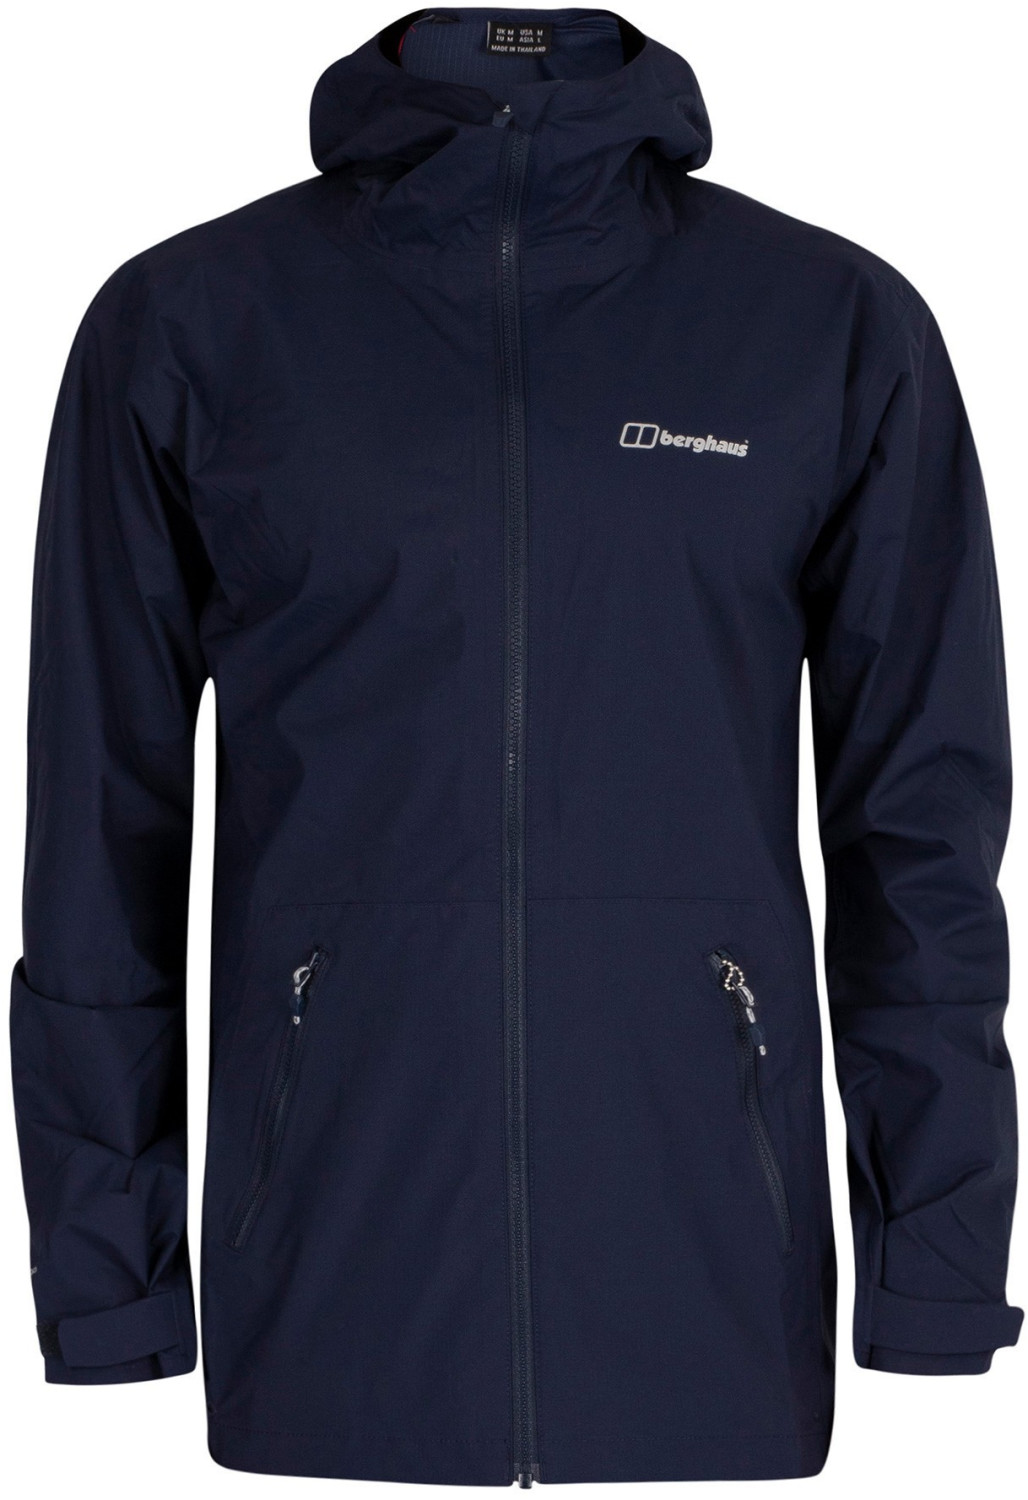 Buy Berghaus Men's Deluge Pro 2.0 Waterproof Jacket Dusk Blue from £60. ...